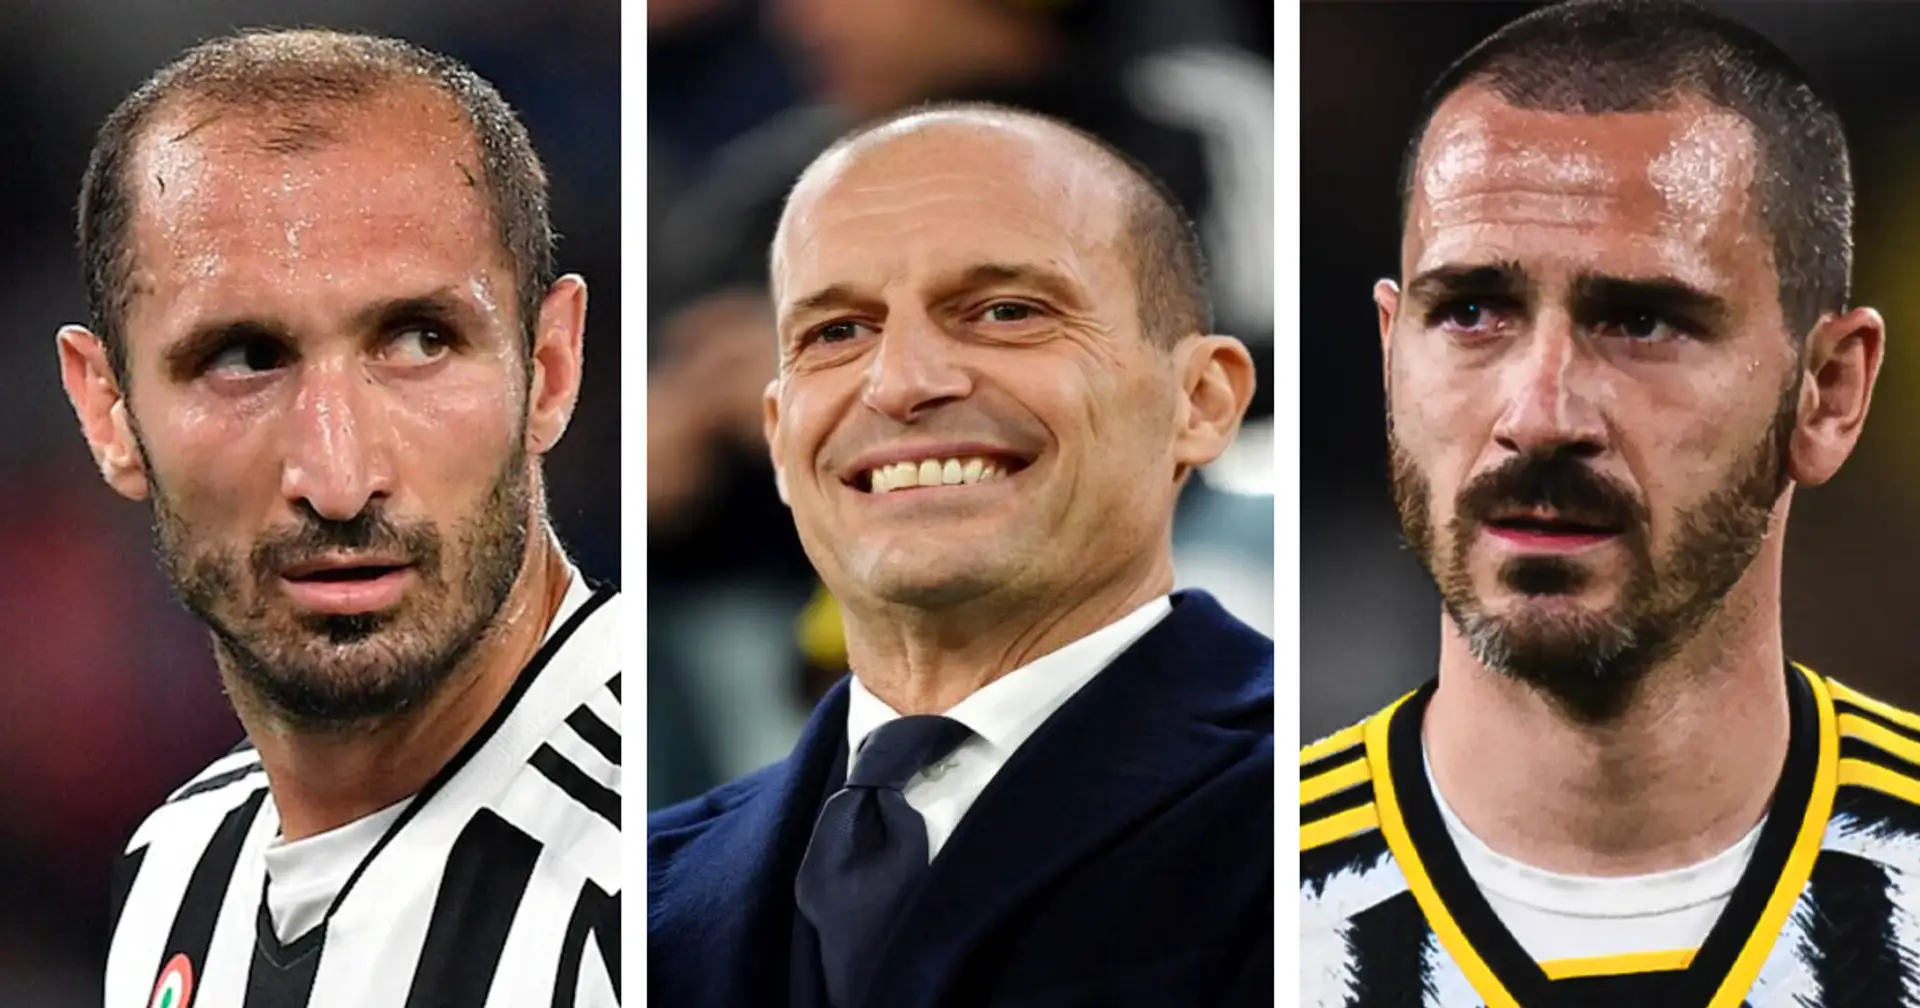 Max Allegri sul futuro di due bandiere della Juventus: "Per loro una nuova vita, rimettersi in gioco è stimolante"